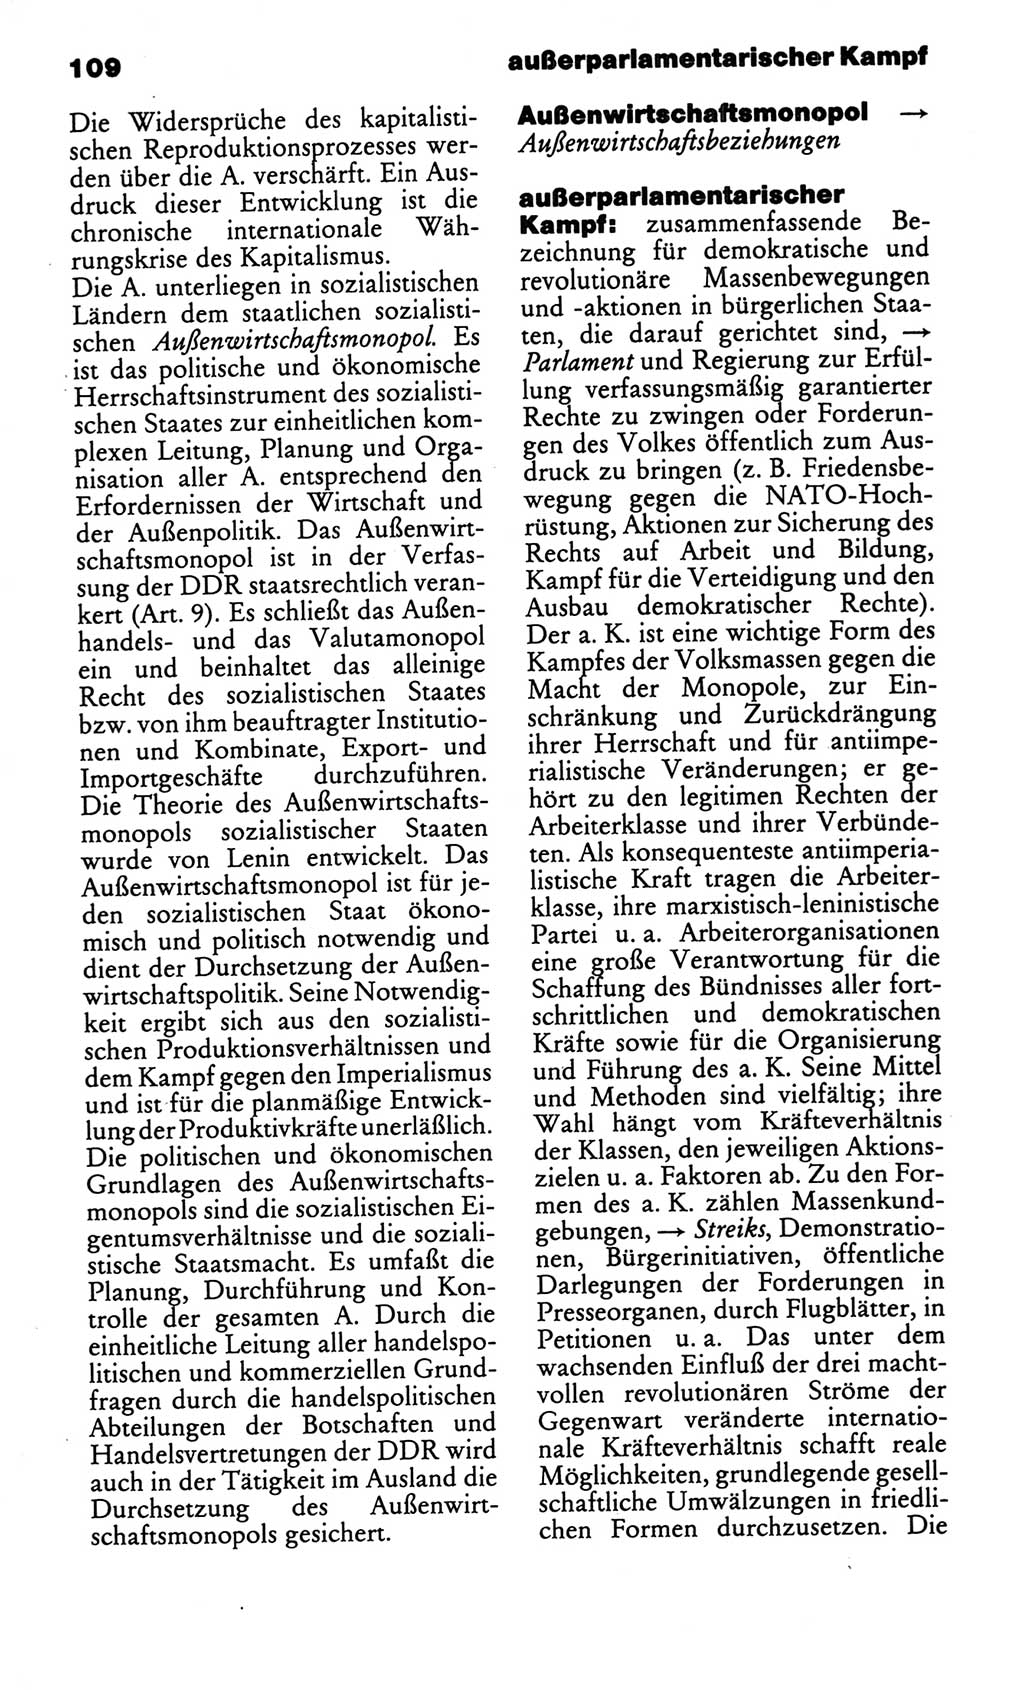 Kleines politisches Wörterbuch [Deutsche Demokratische Republik (DDR)] 1986, Seite 109 (Kl. pol. Wb. DDR 1986, S. 109)